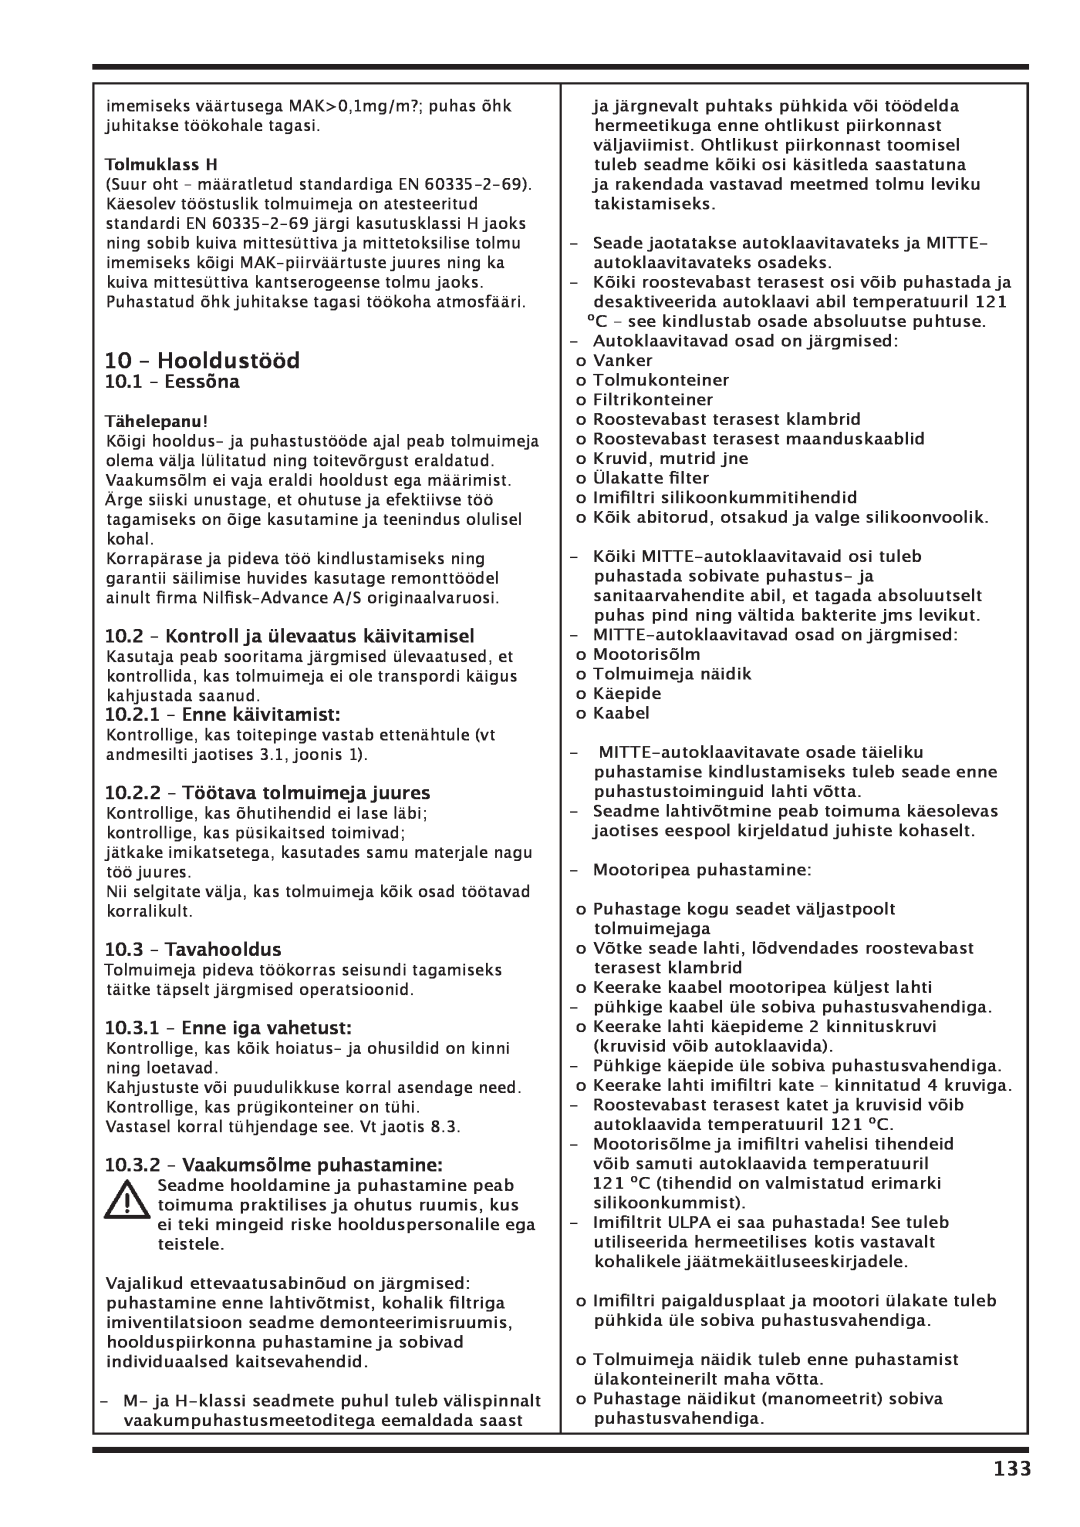 Nilfisk-Advance America IVT 1000 CR H 10 – Hooldustööd, 10.1 – Eessõna, 10.2– Kontroll ja ülevaatus käivitamisel 